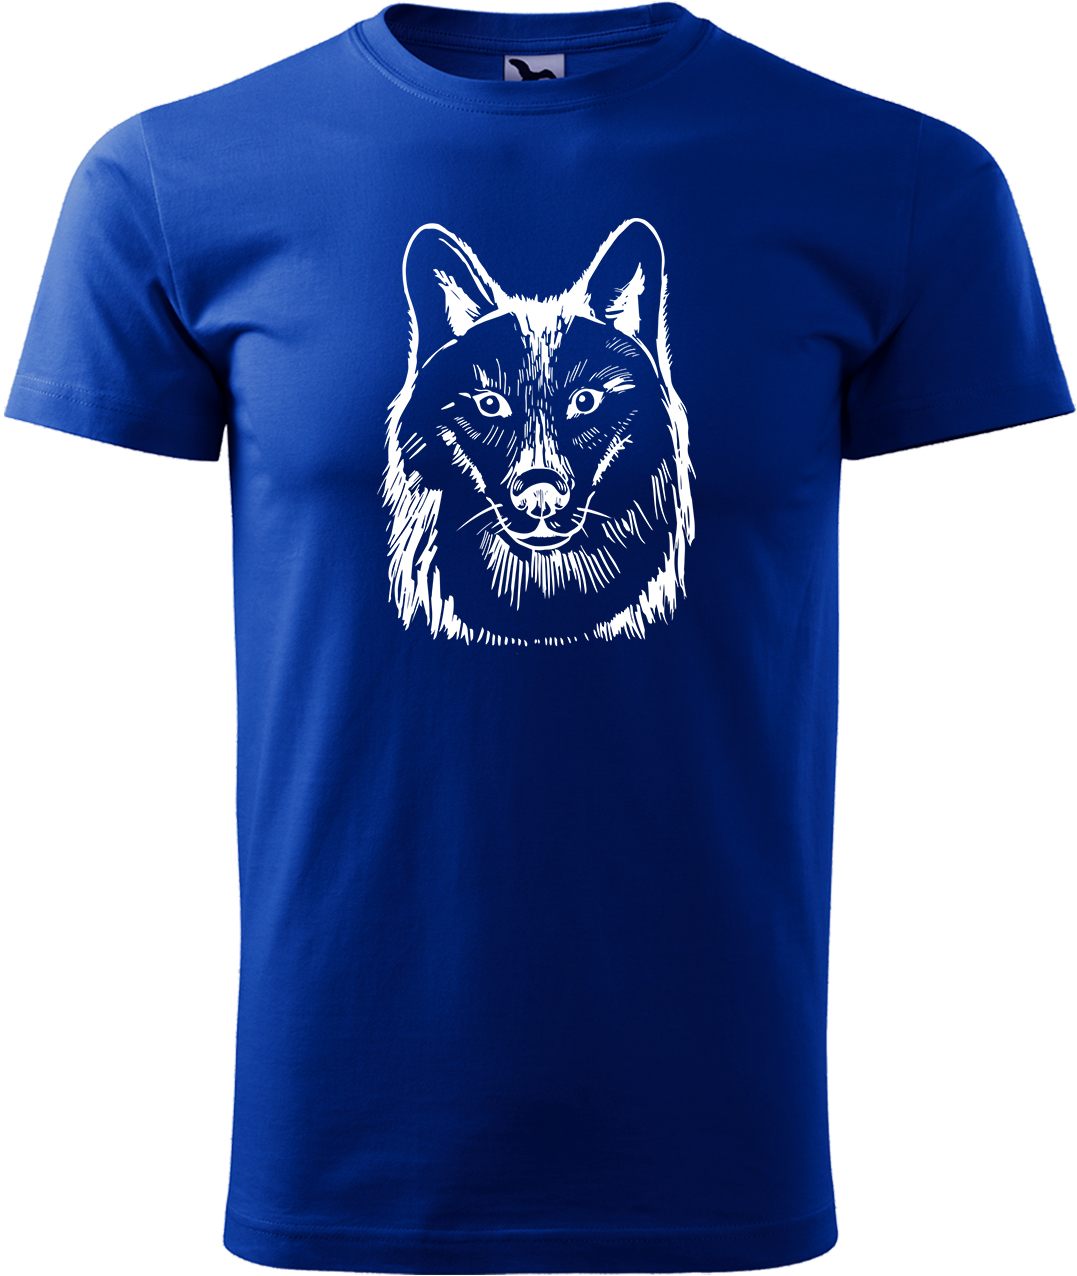 Pánské tričko s vlkem - Kresba vlka Velikost: S, Barva: Královská modrá (05), Střih: pánský